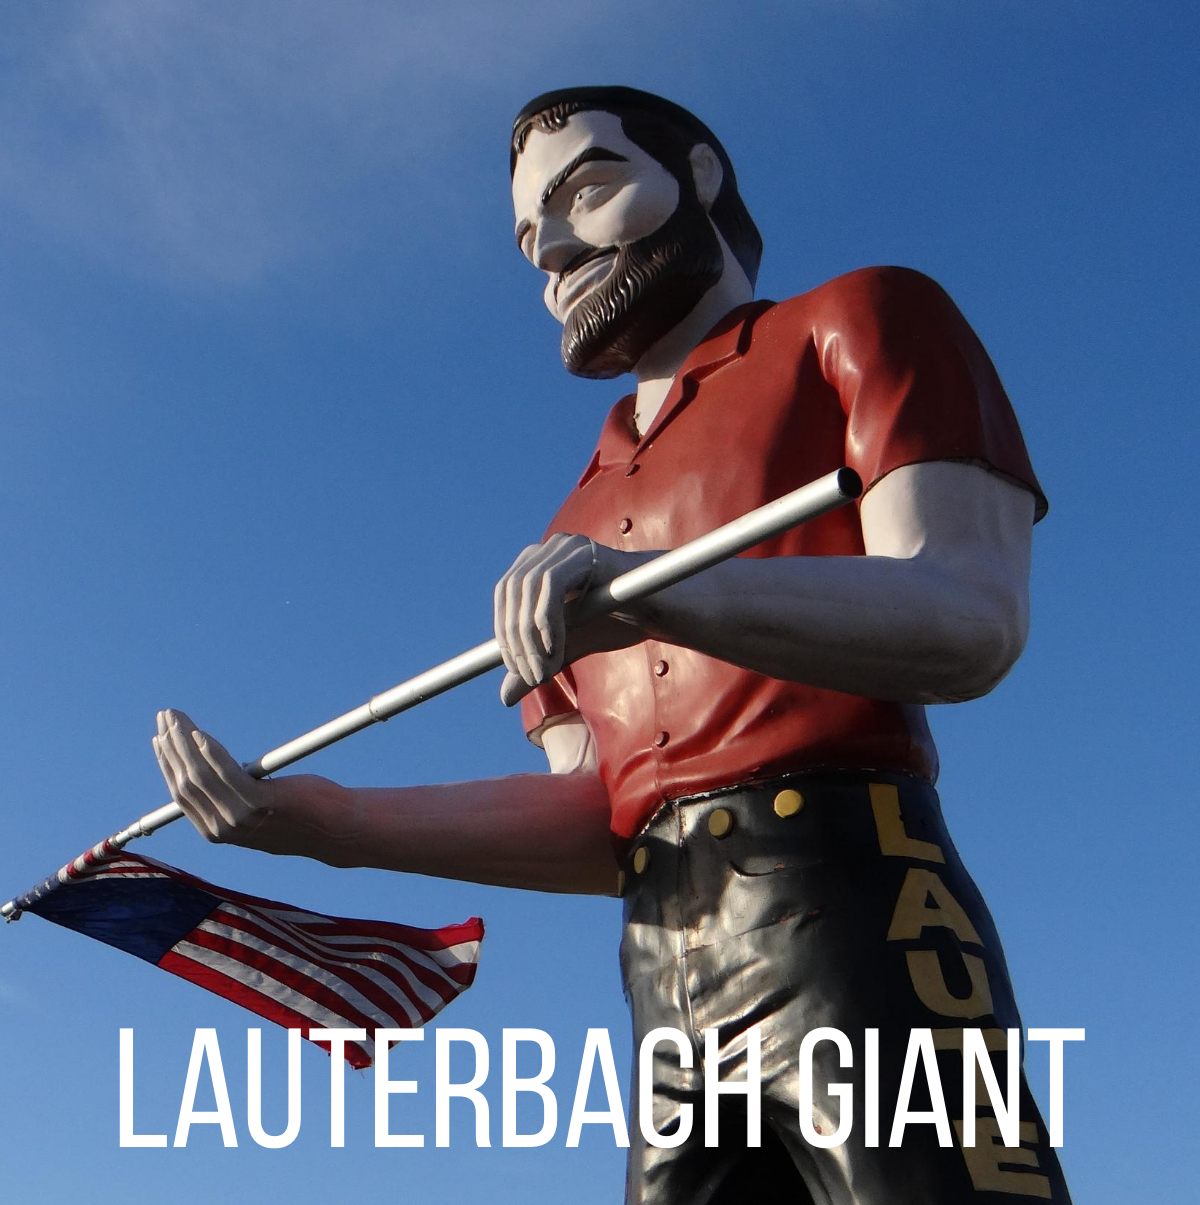 Lauterbach Giant